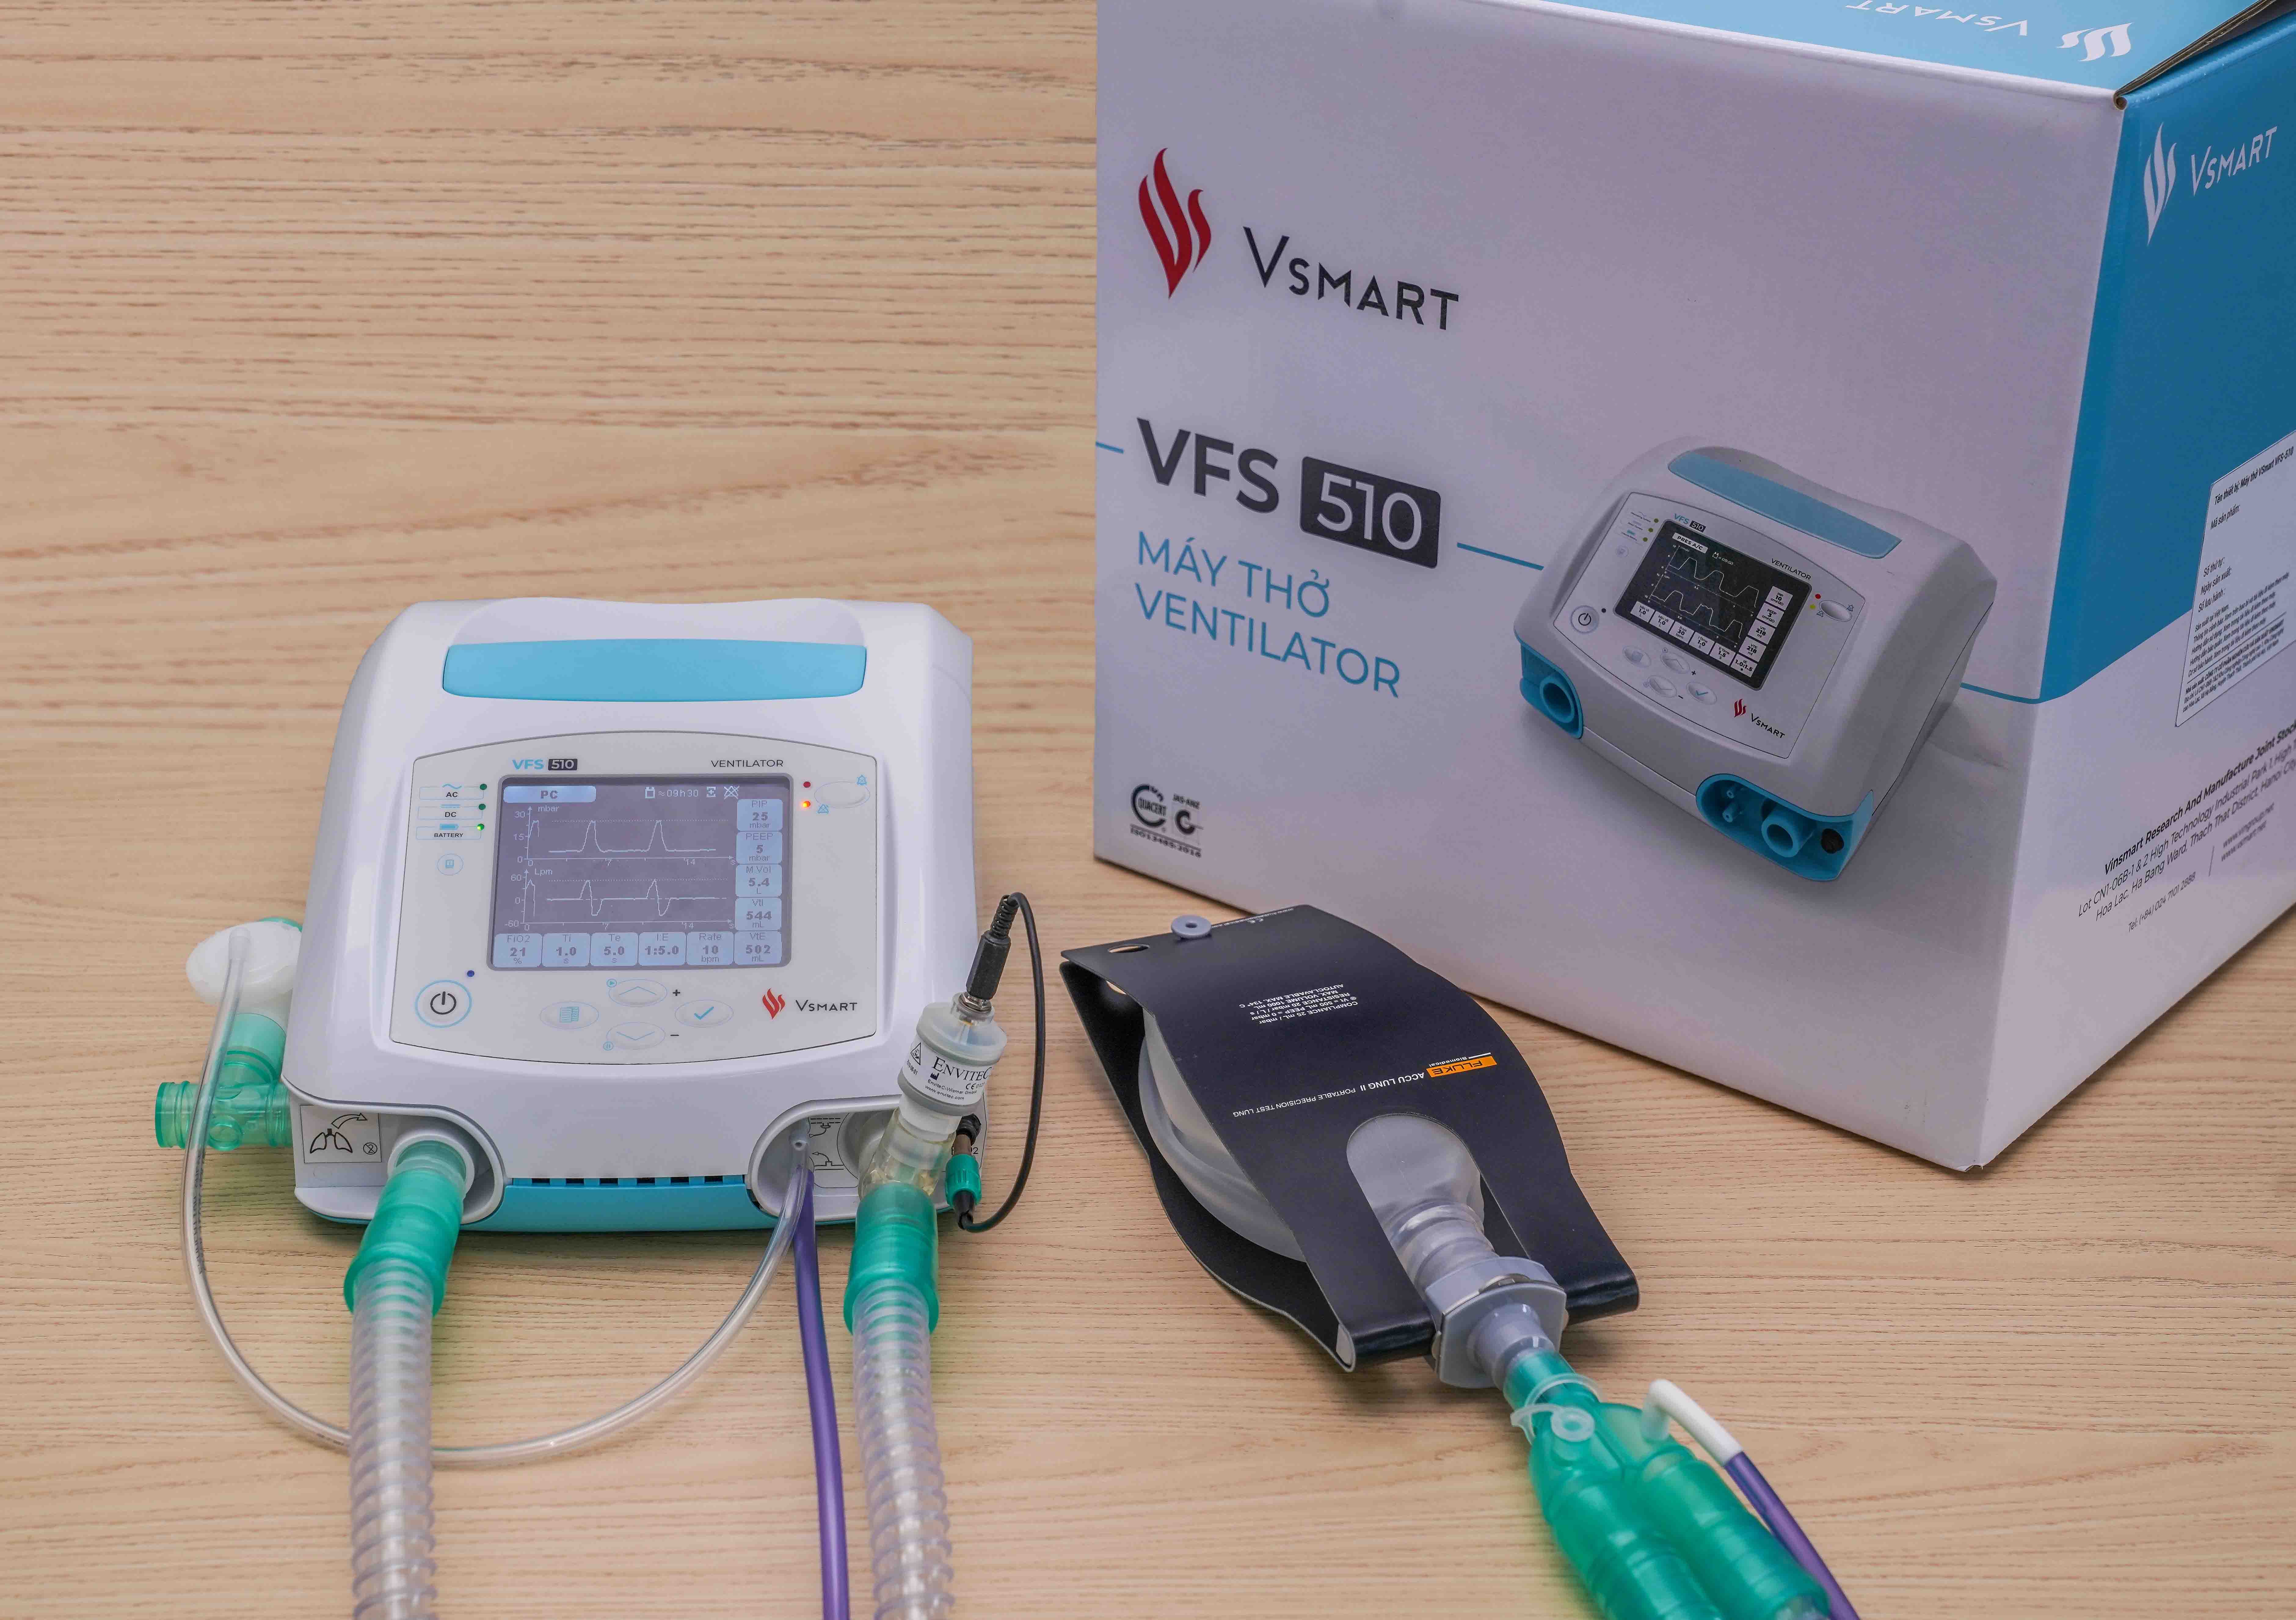 Máy thở VFS-510 không chỉ đáp ứng kịp thời cho nhu cầu điều trị dịch COVID-19p/trước mắt; mà còn có thể tiếp tục sử dụng trong việc điều trị tích cực (ICU) của các cơ sở y tế, mang lại giá trị và hiệu quả trong dài hạn.